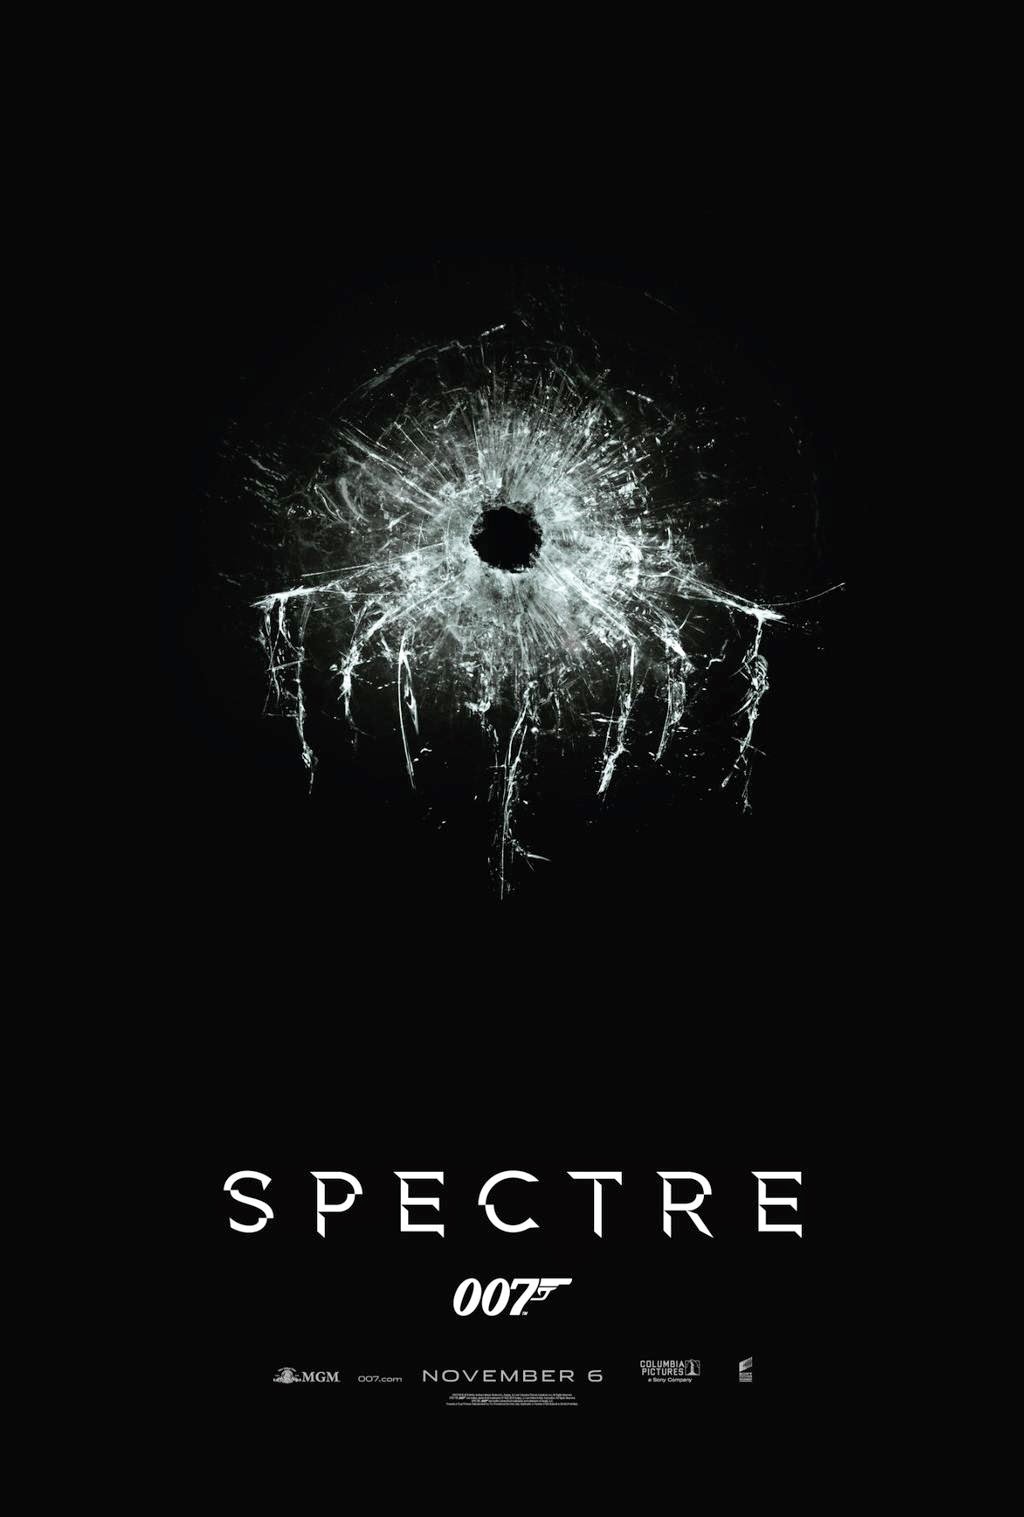 007 spectre watch online